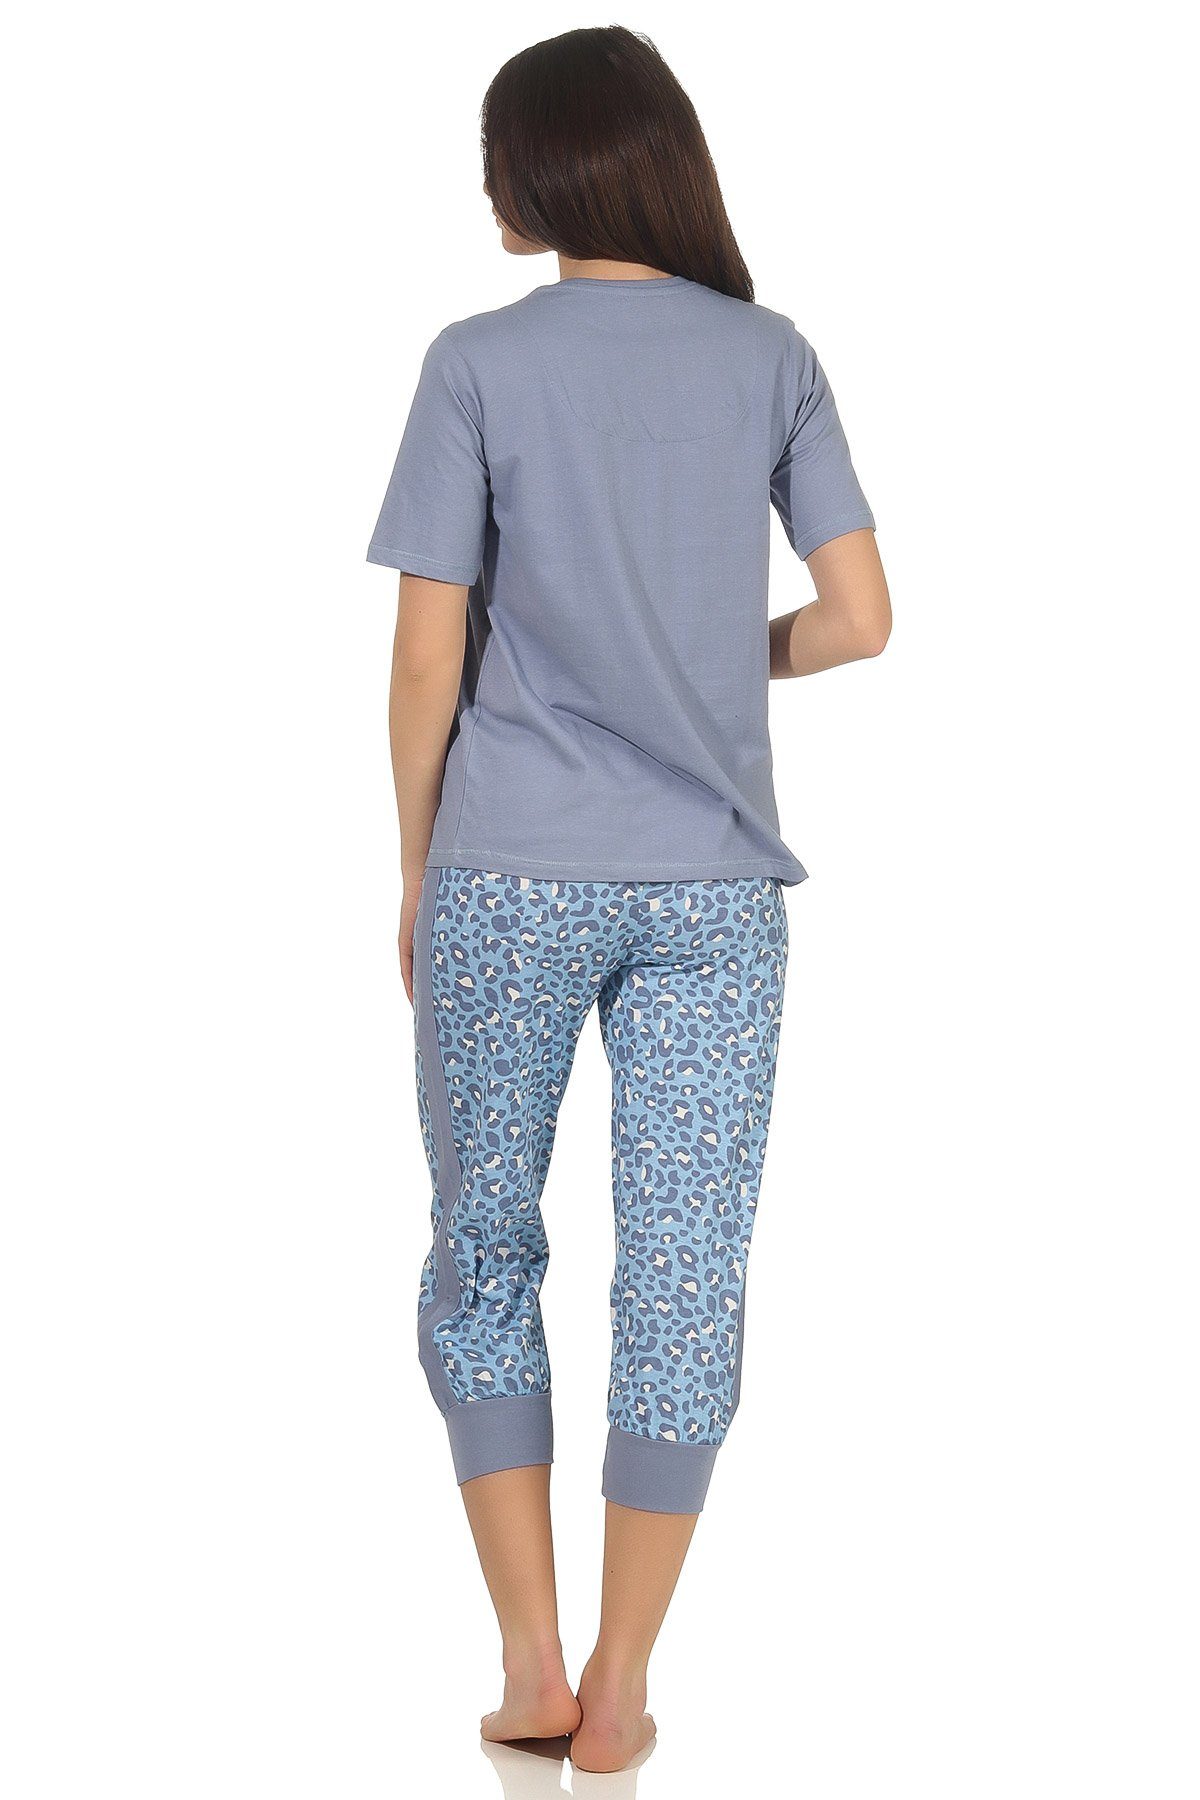 Wäsche/Bademode Pyjamas Normann Pyjama Damen Capri Pyjama kurzarm, Caprihose mit seitlichen Streifen am Bein und Leo-Muster